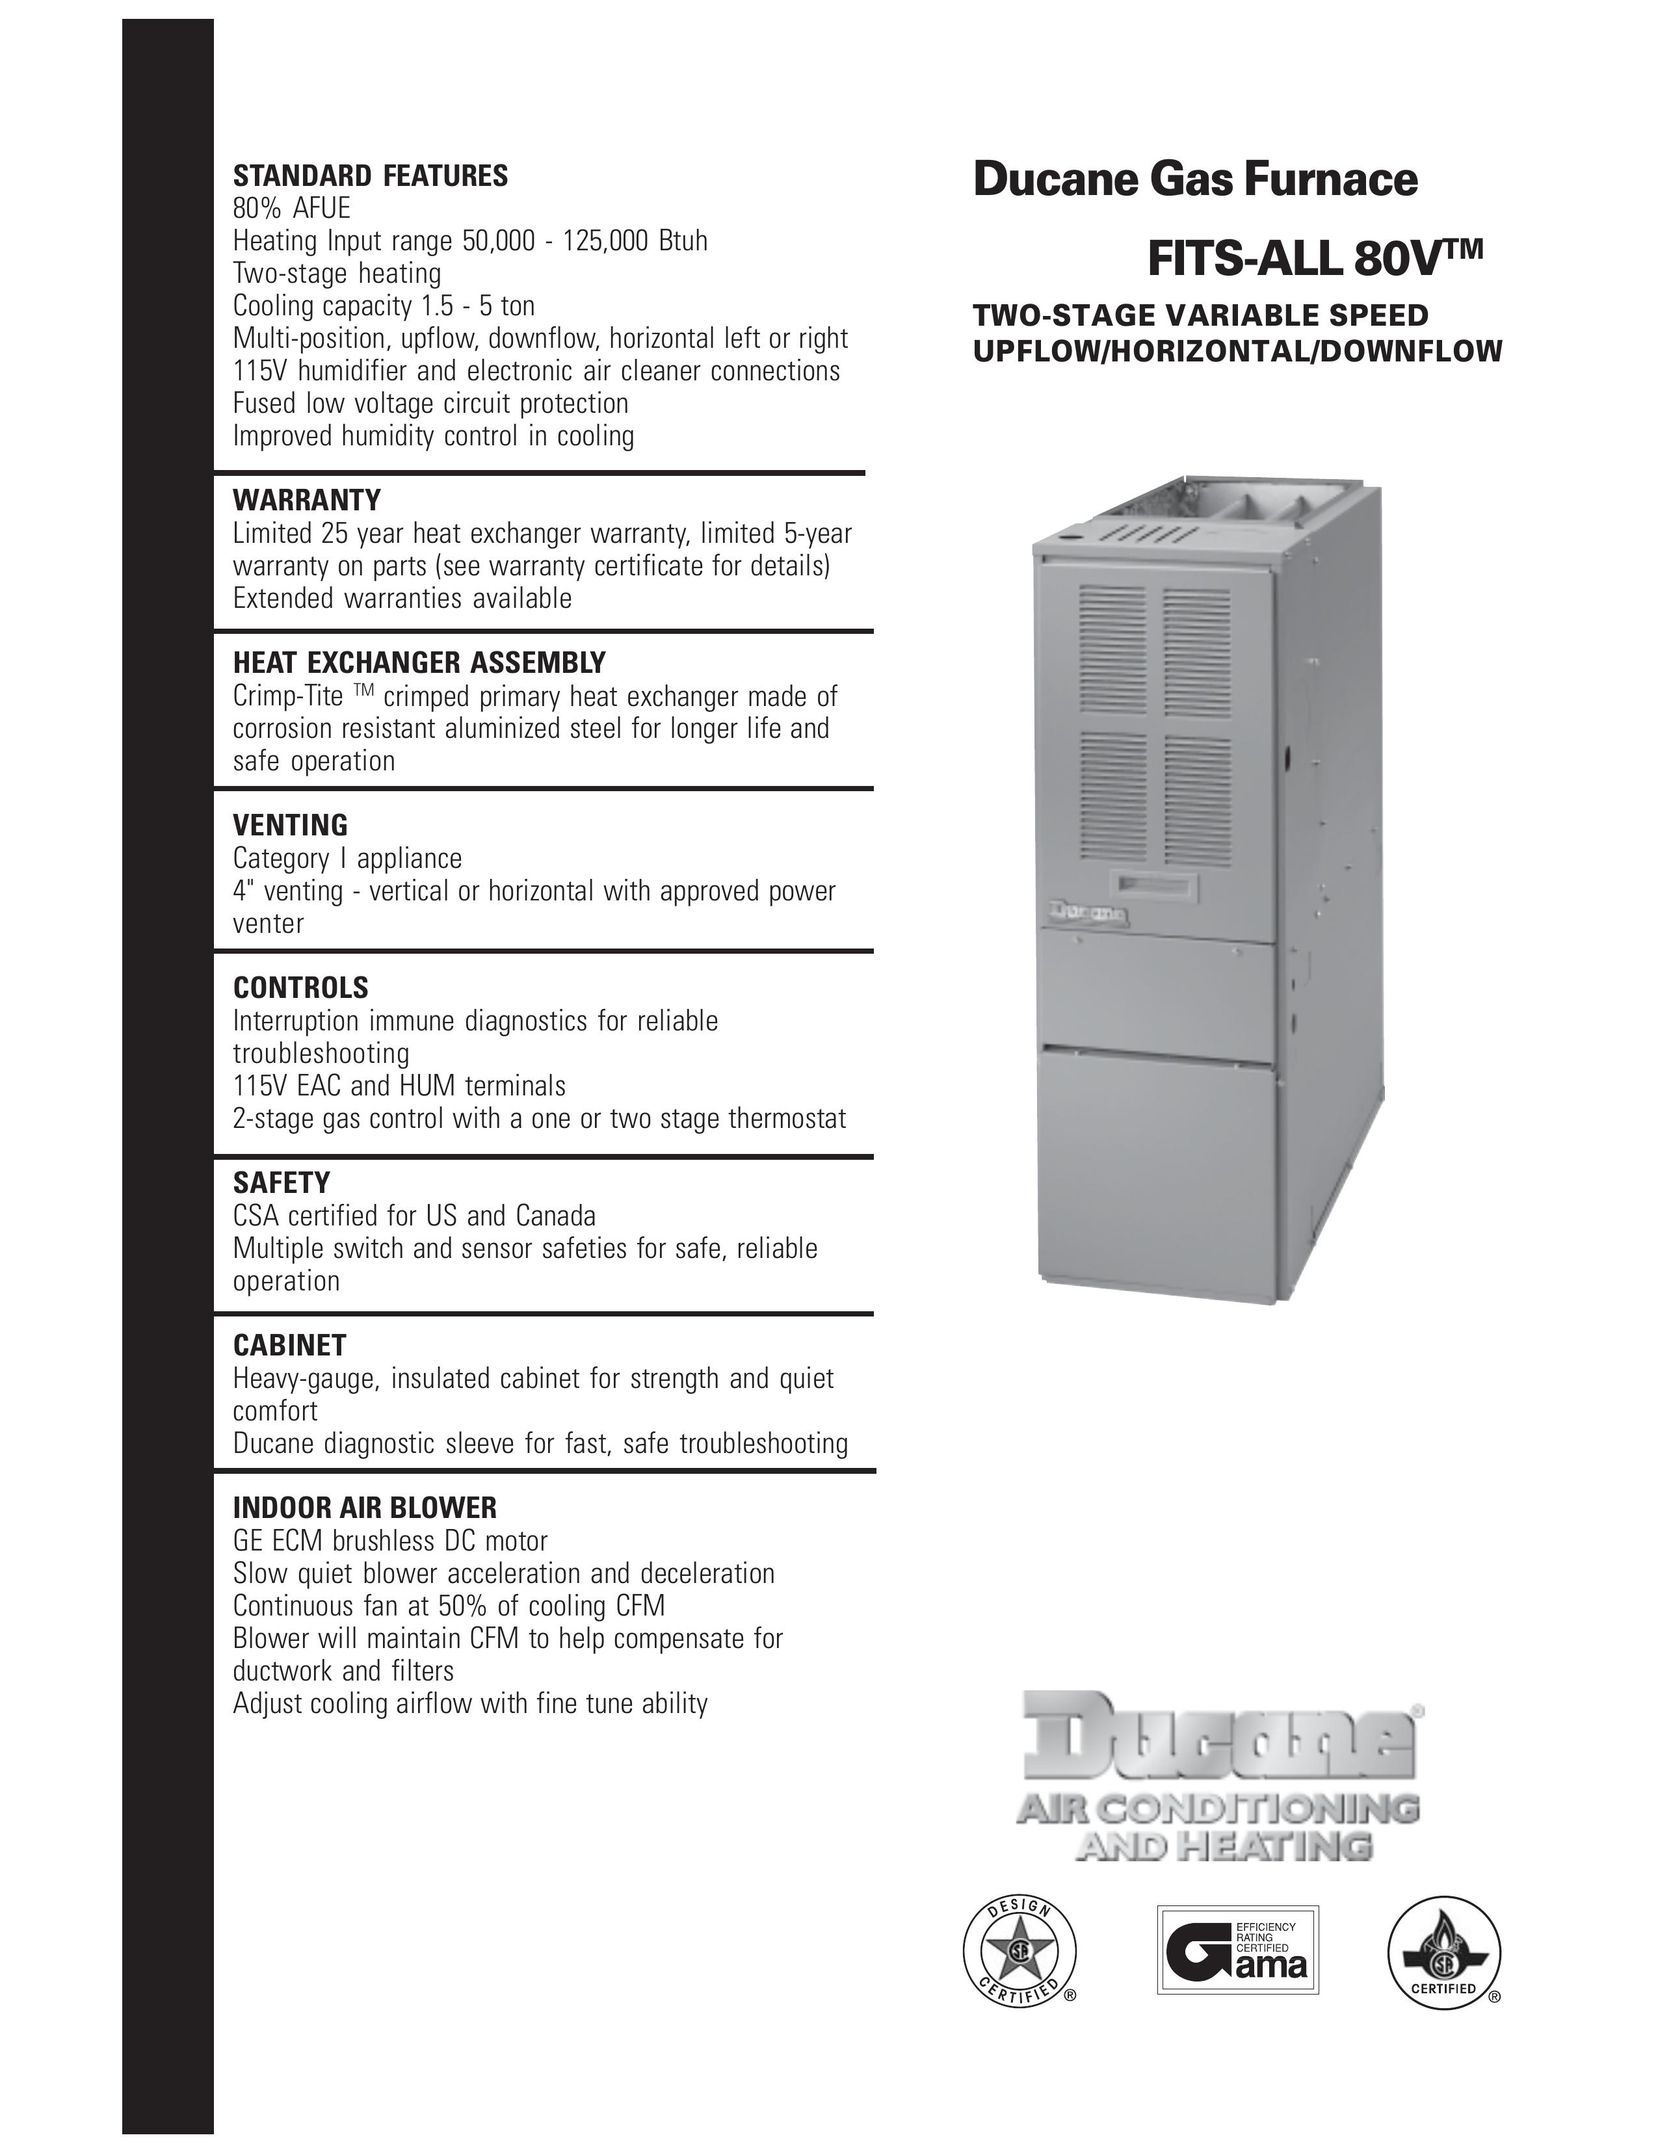 Ducane (HVAC) FITS-ALL 80V Furnace User Manual